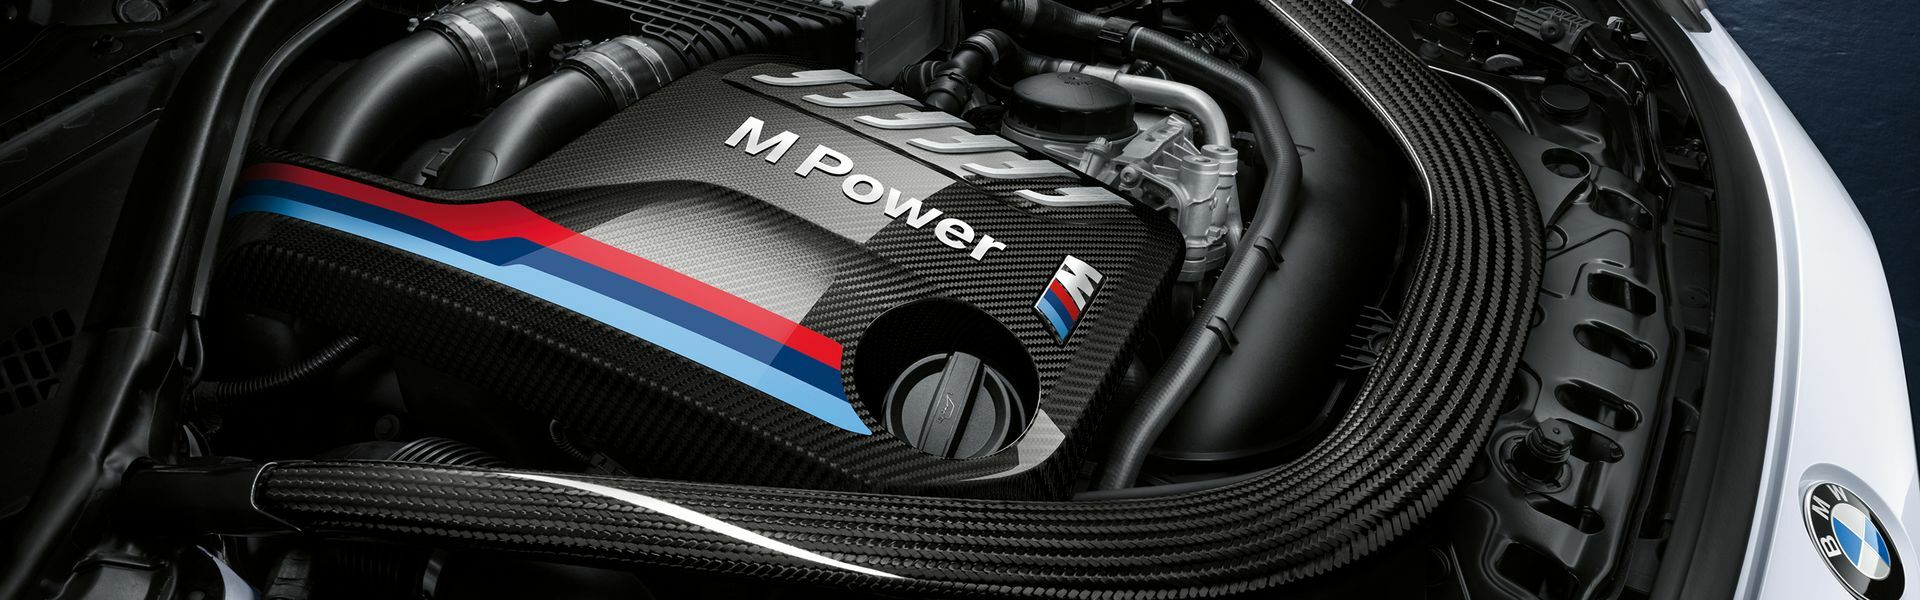 Zvýšení výkonu/ Softwarové úpravy/ Drobné performance díly pro automobil BMW X6M E71